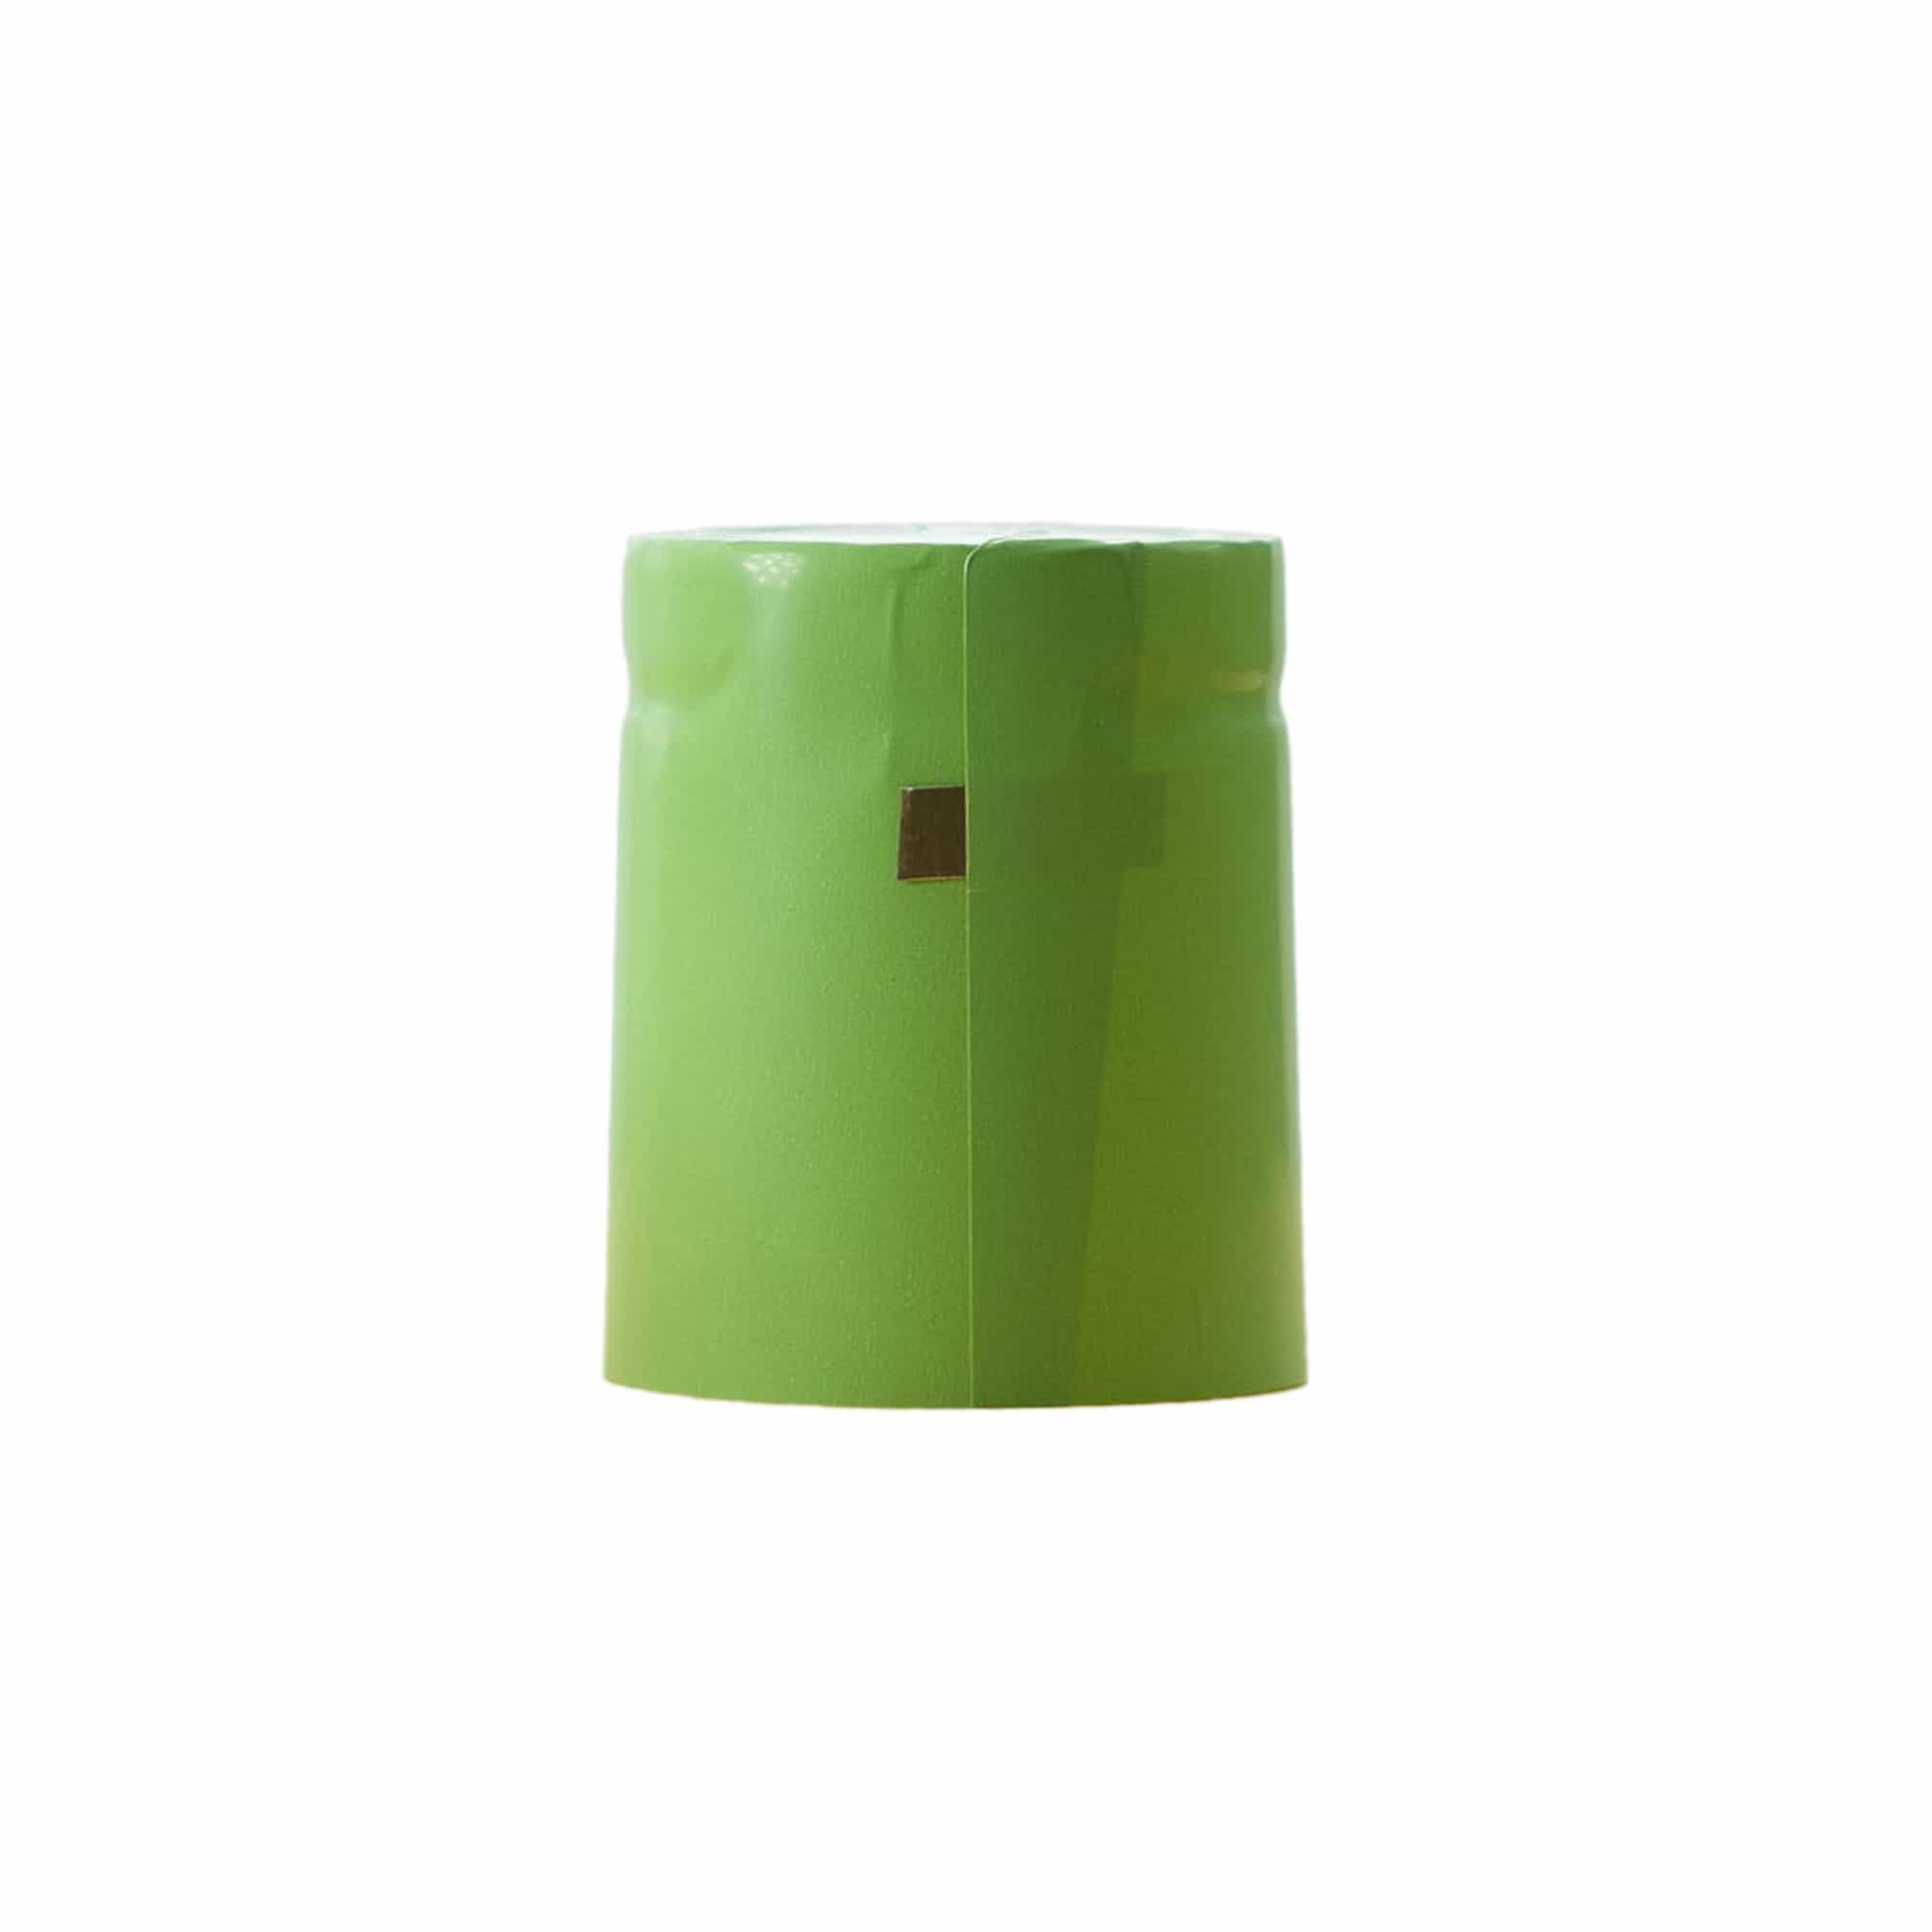 Capsule thermo-rétractable 32x41, plastique PVC, vert tilleul